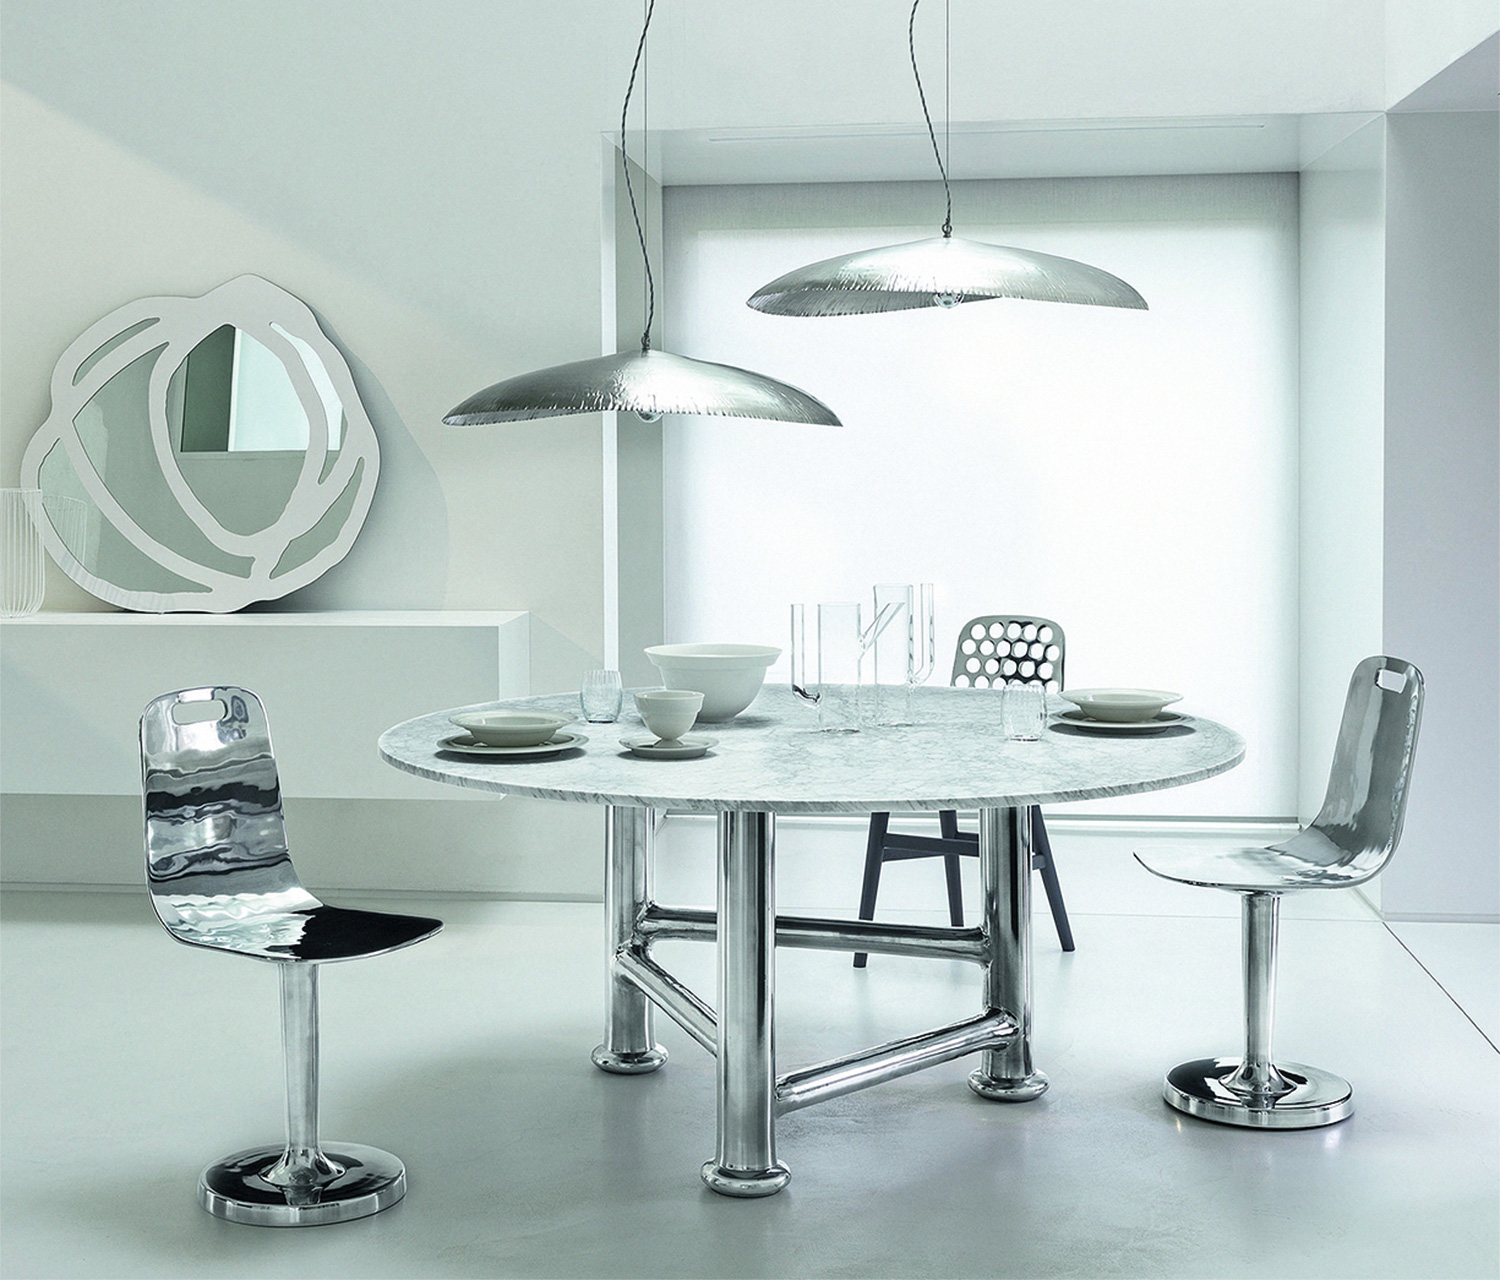 Стол и стулья из коллекции Next, лампы Silver 95 из коллекции Brass, дизайн Паолы Навоне, Gervasoni